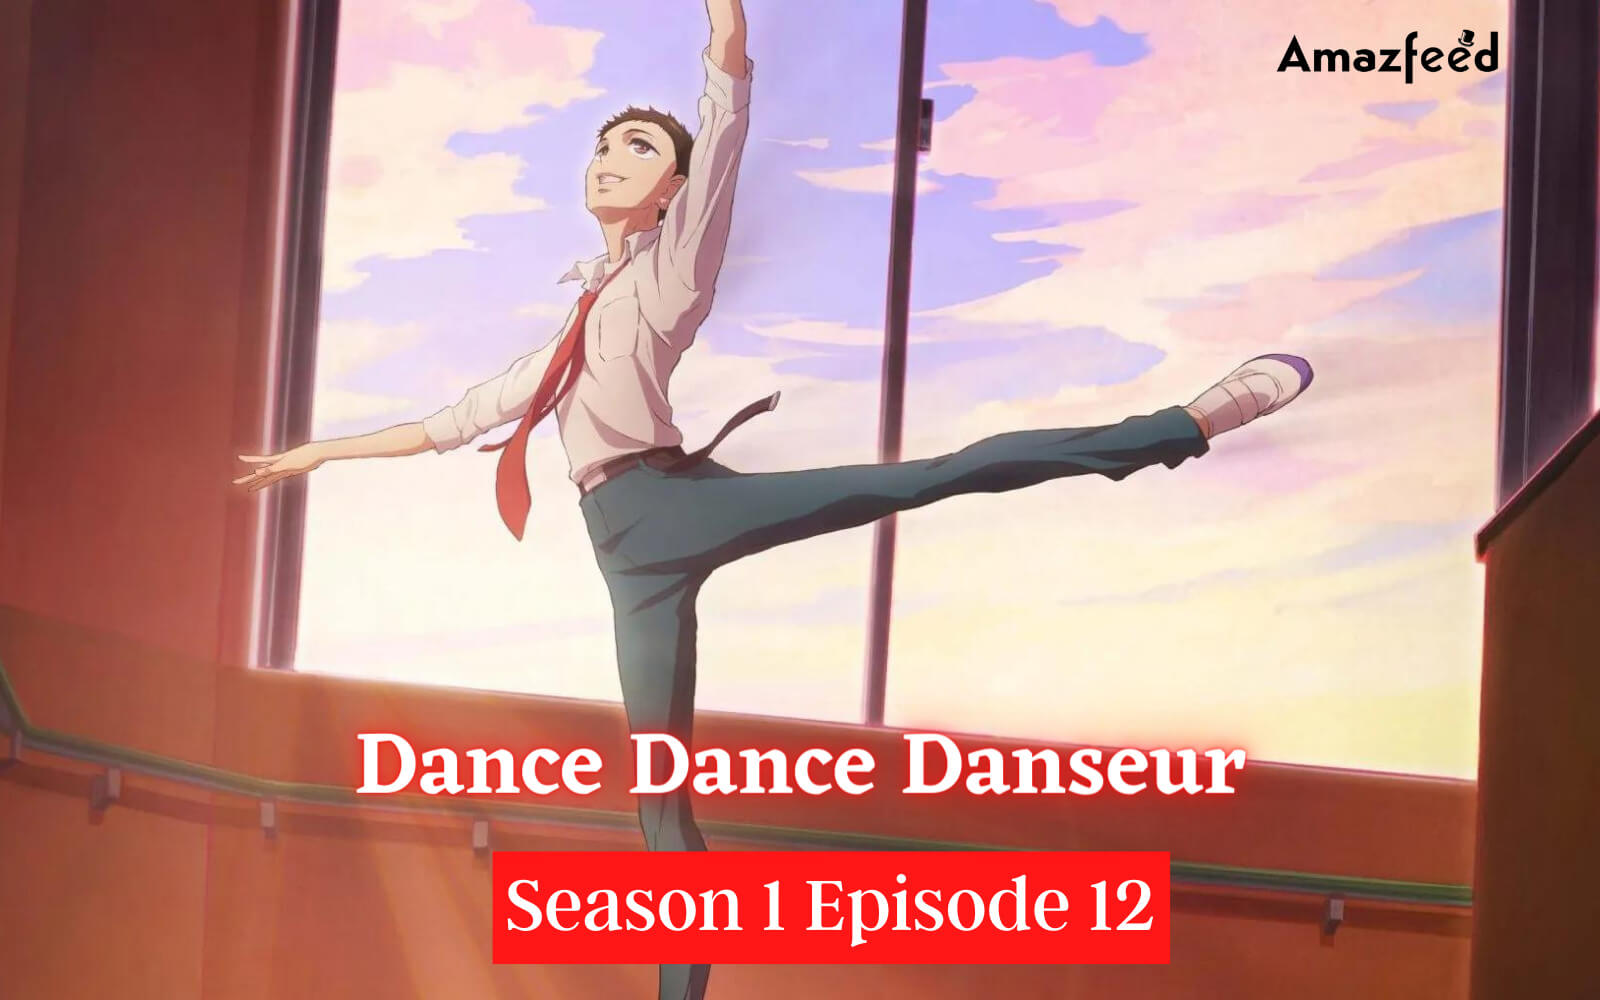 Dance Dance Danseur Season 1 Episode 12 Release date